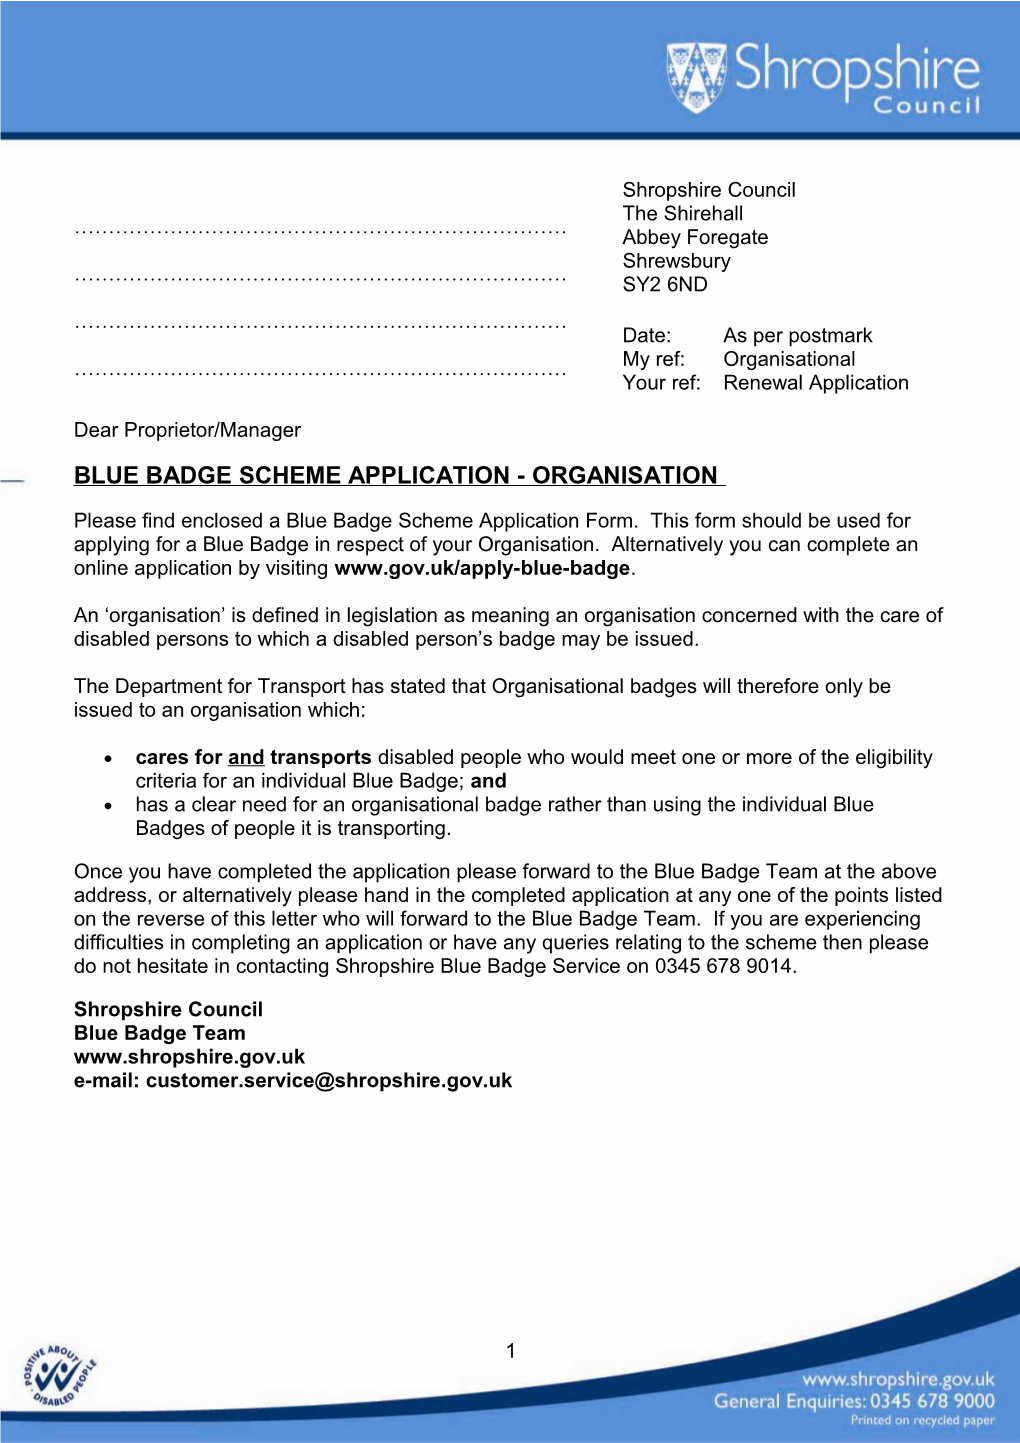 Blue Badge Scheme Application - Organisation